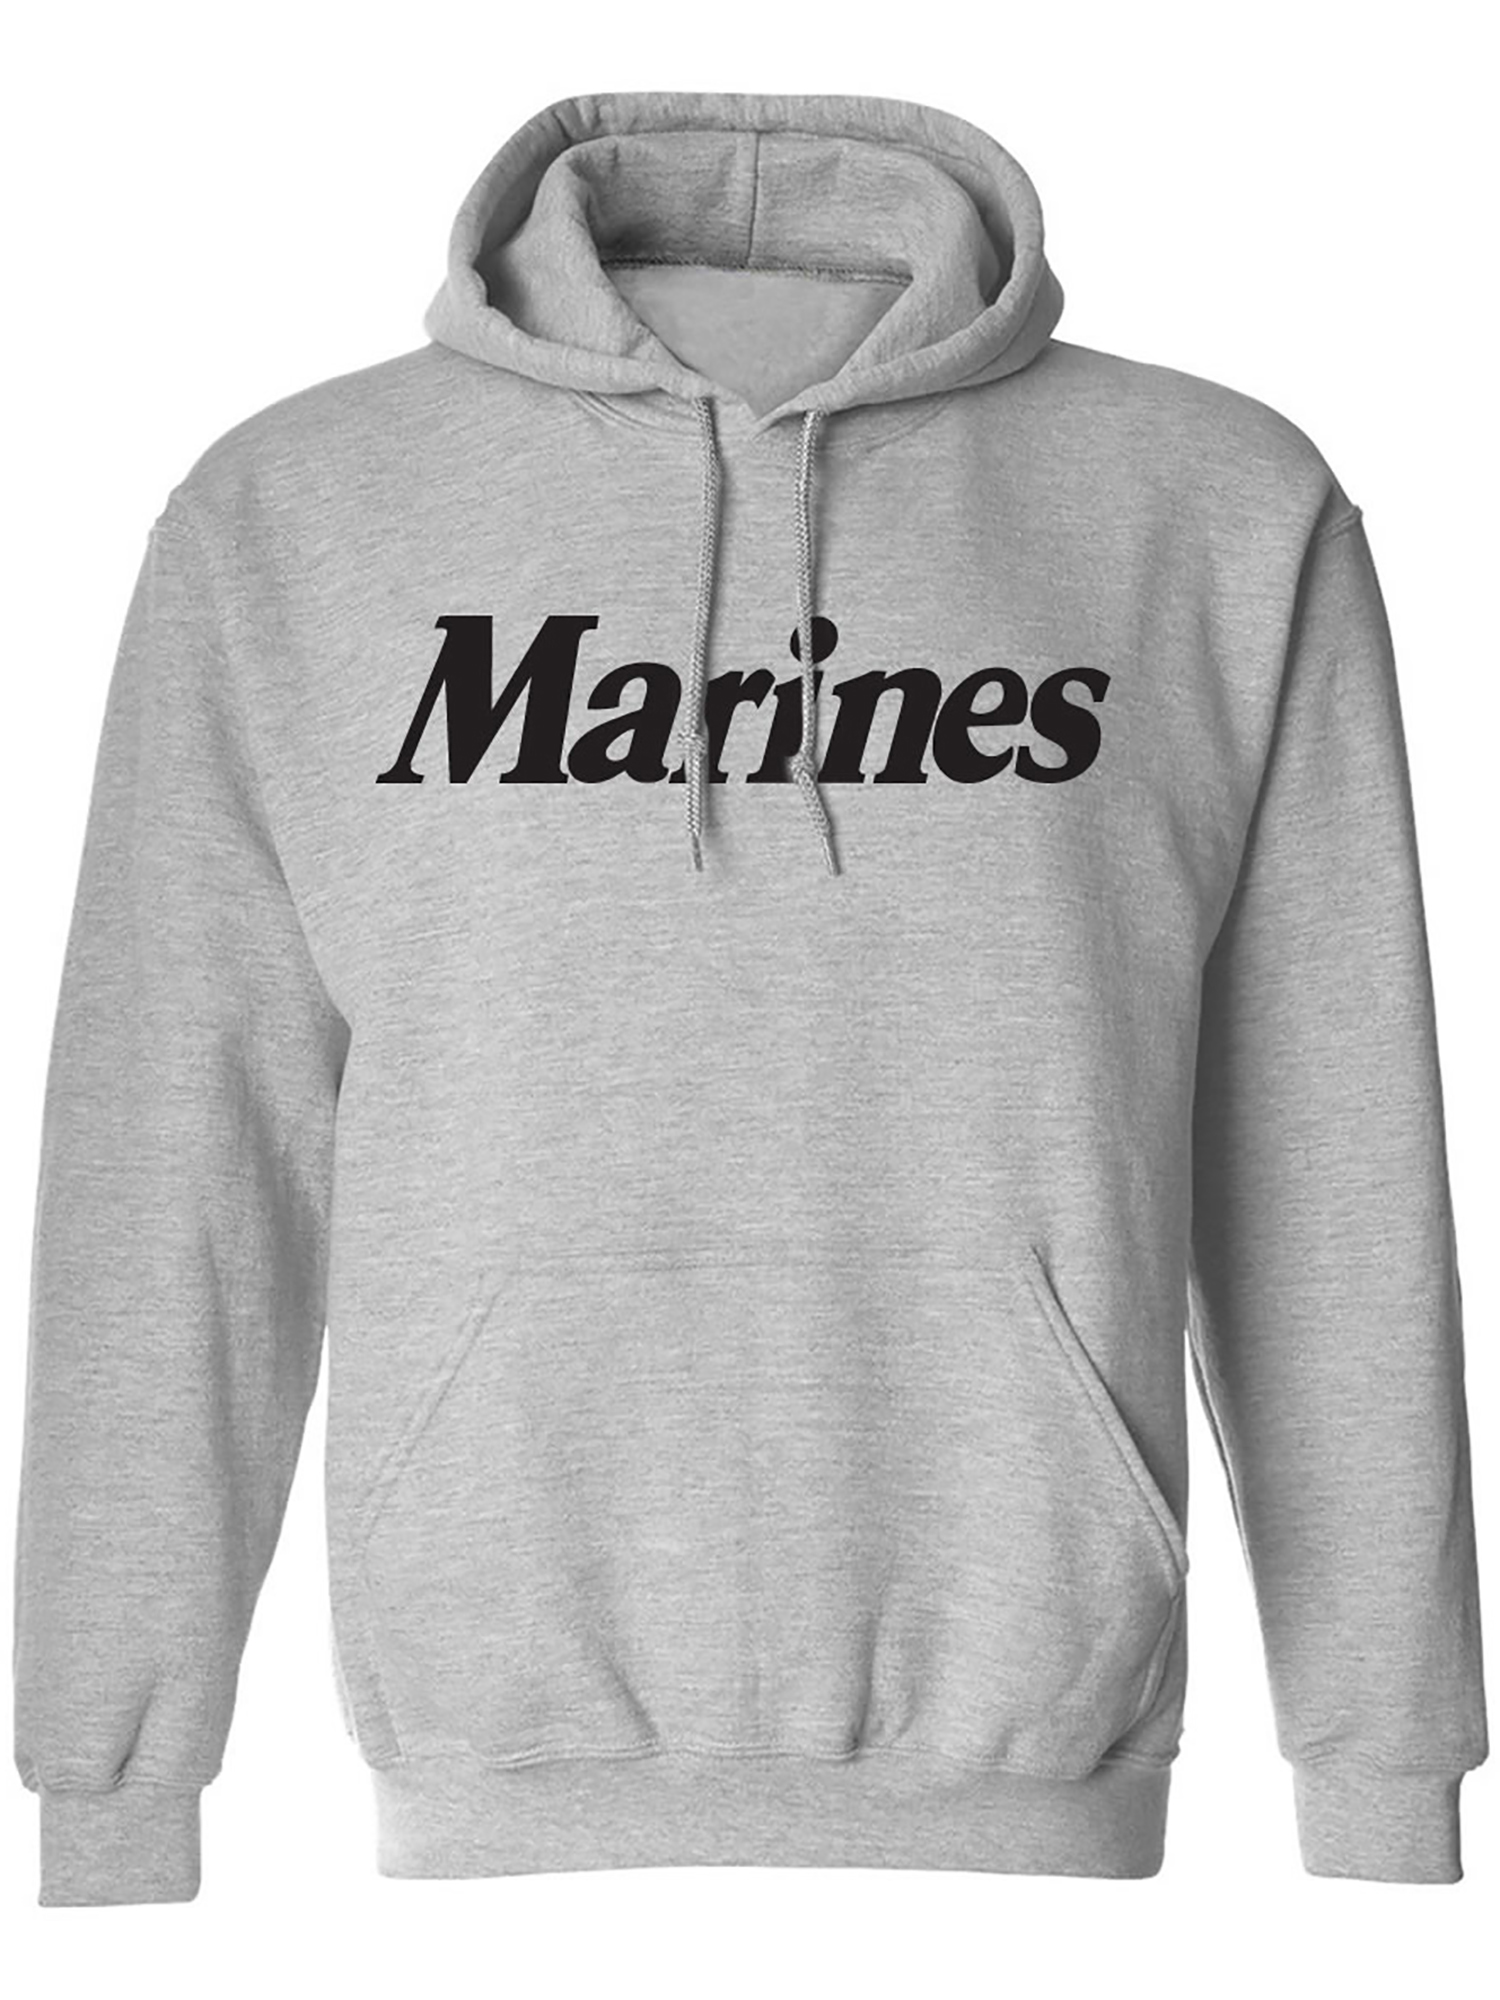 Big and Tall Marines Hooded Sweatshirt in Gray - Walmart.com